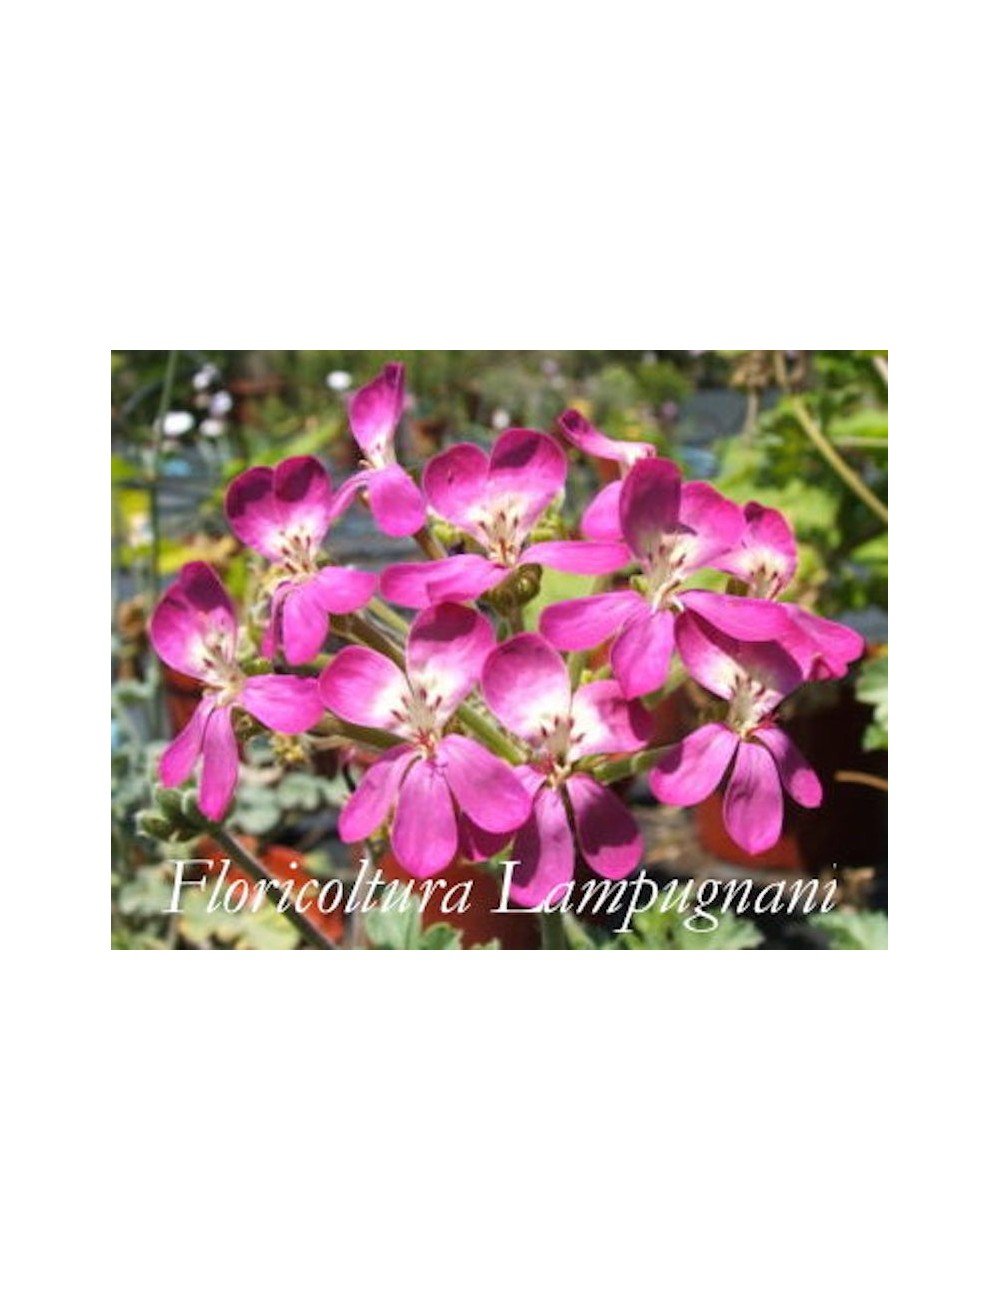 elargonium Gibbosum rosa (Succulento